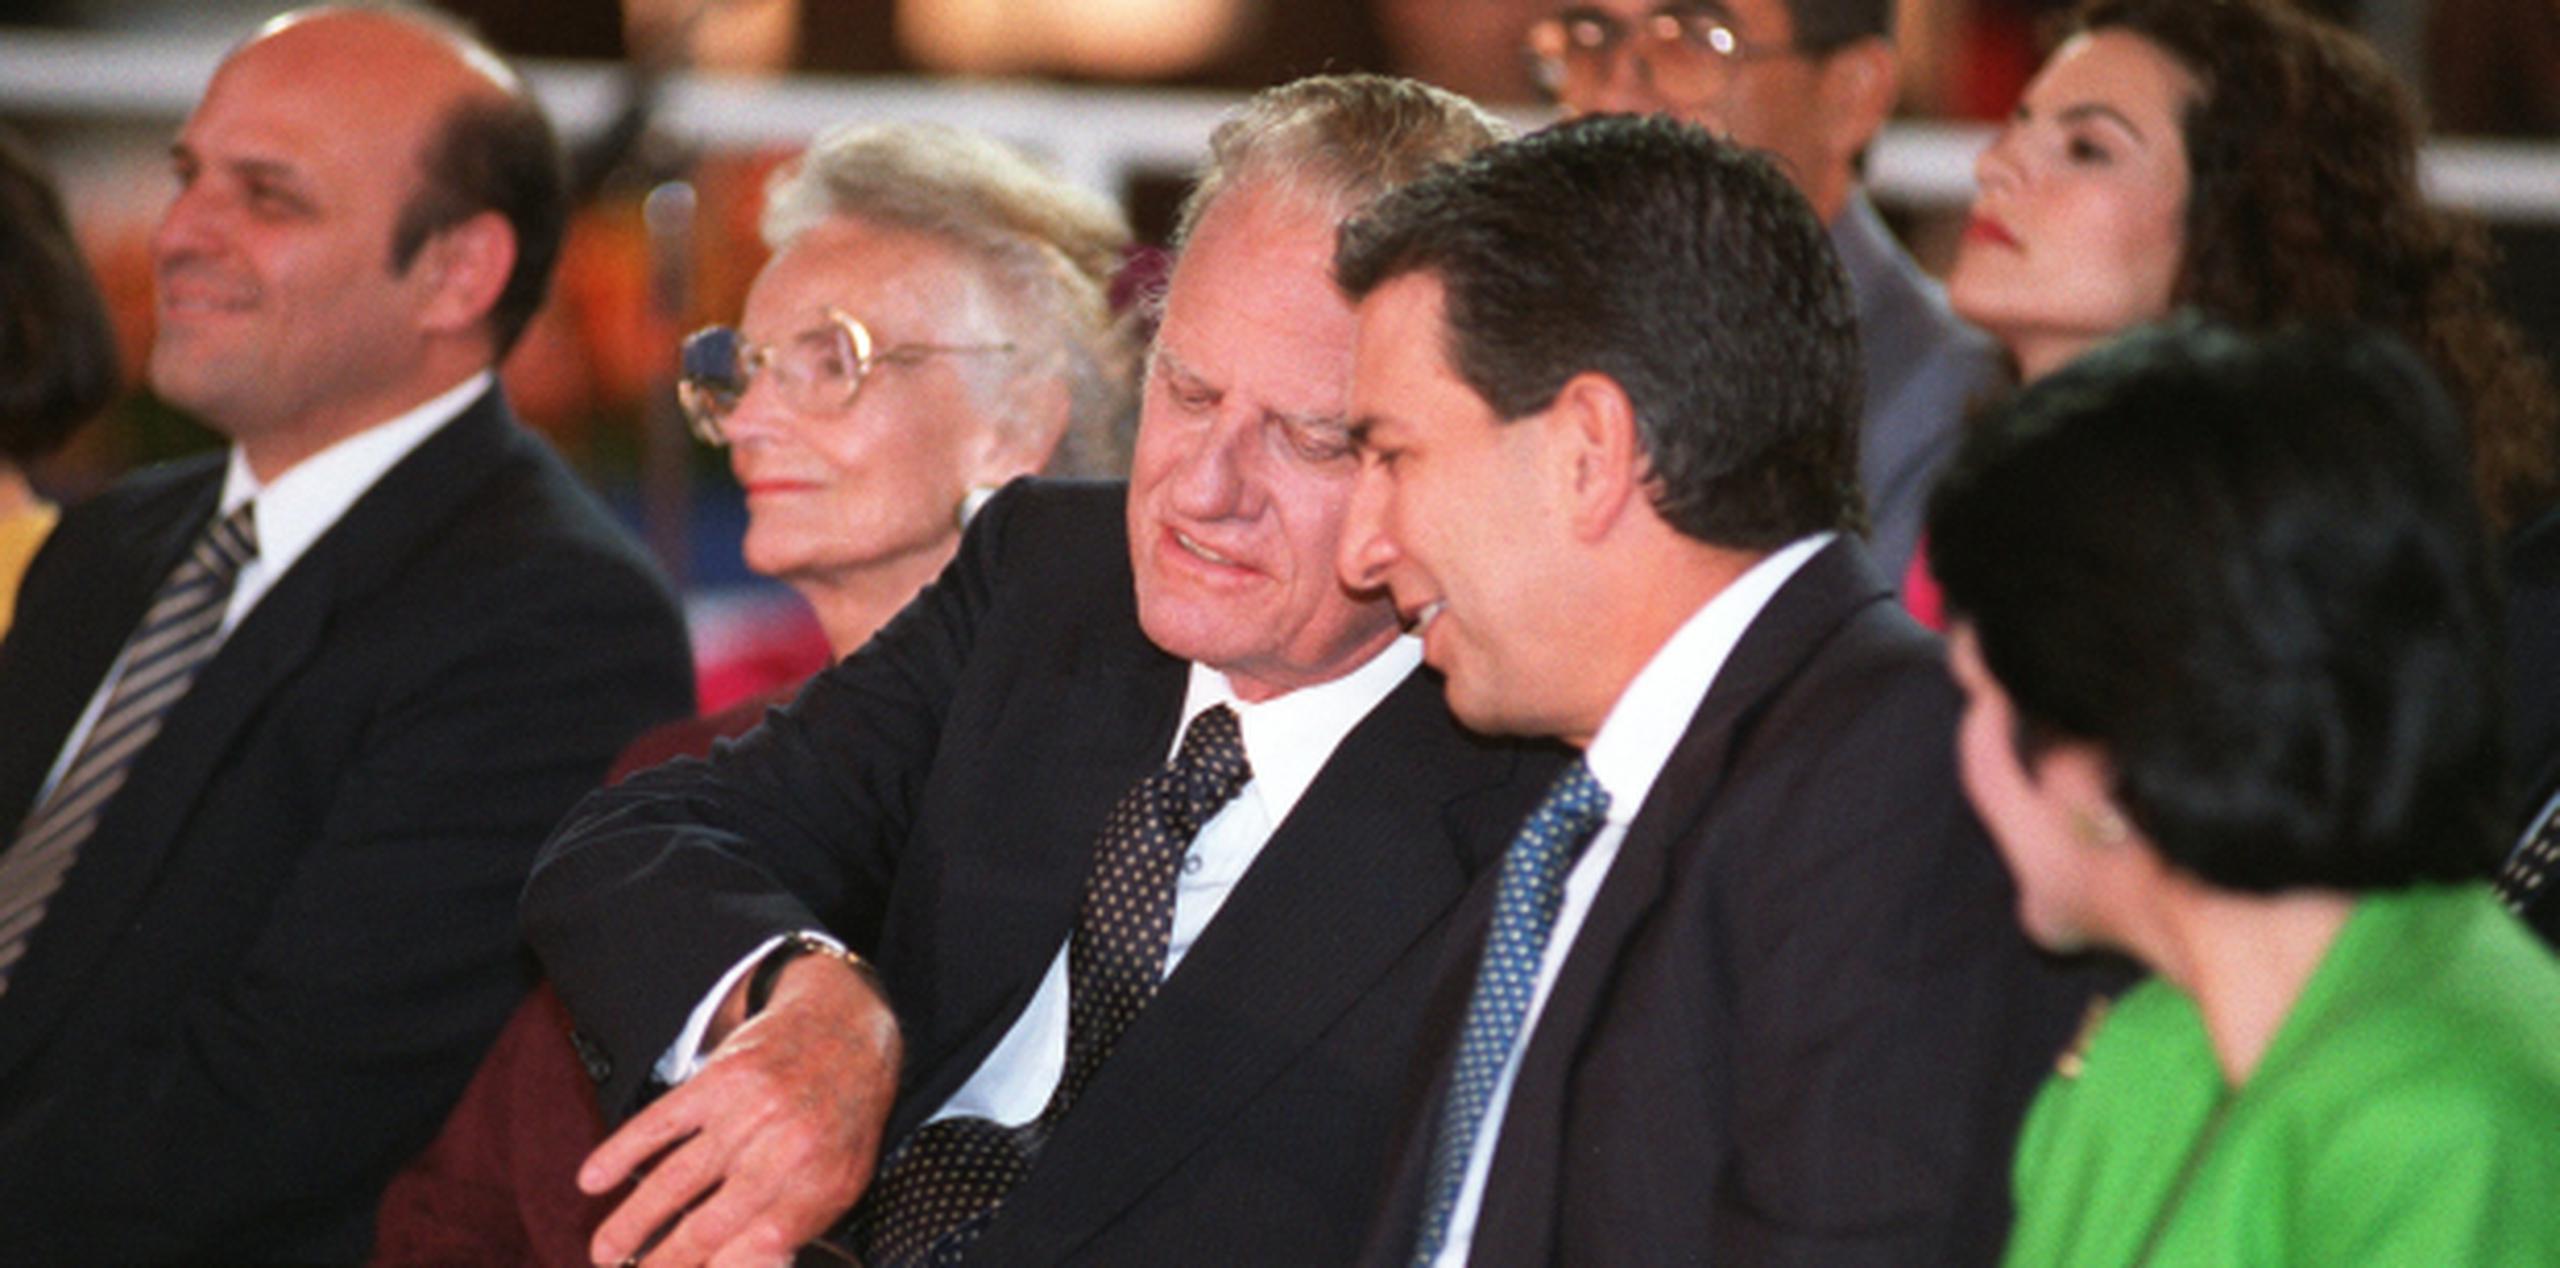 Graham le muestra su reloj al entonces gobernador Pedro Rosselló. Al fondo se ve al entonces alcalde de San Juan, Héctor Luis Acevedo. (Archivo)